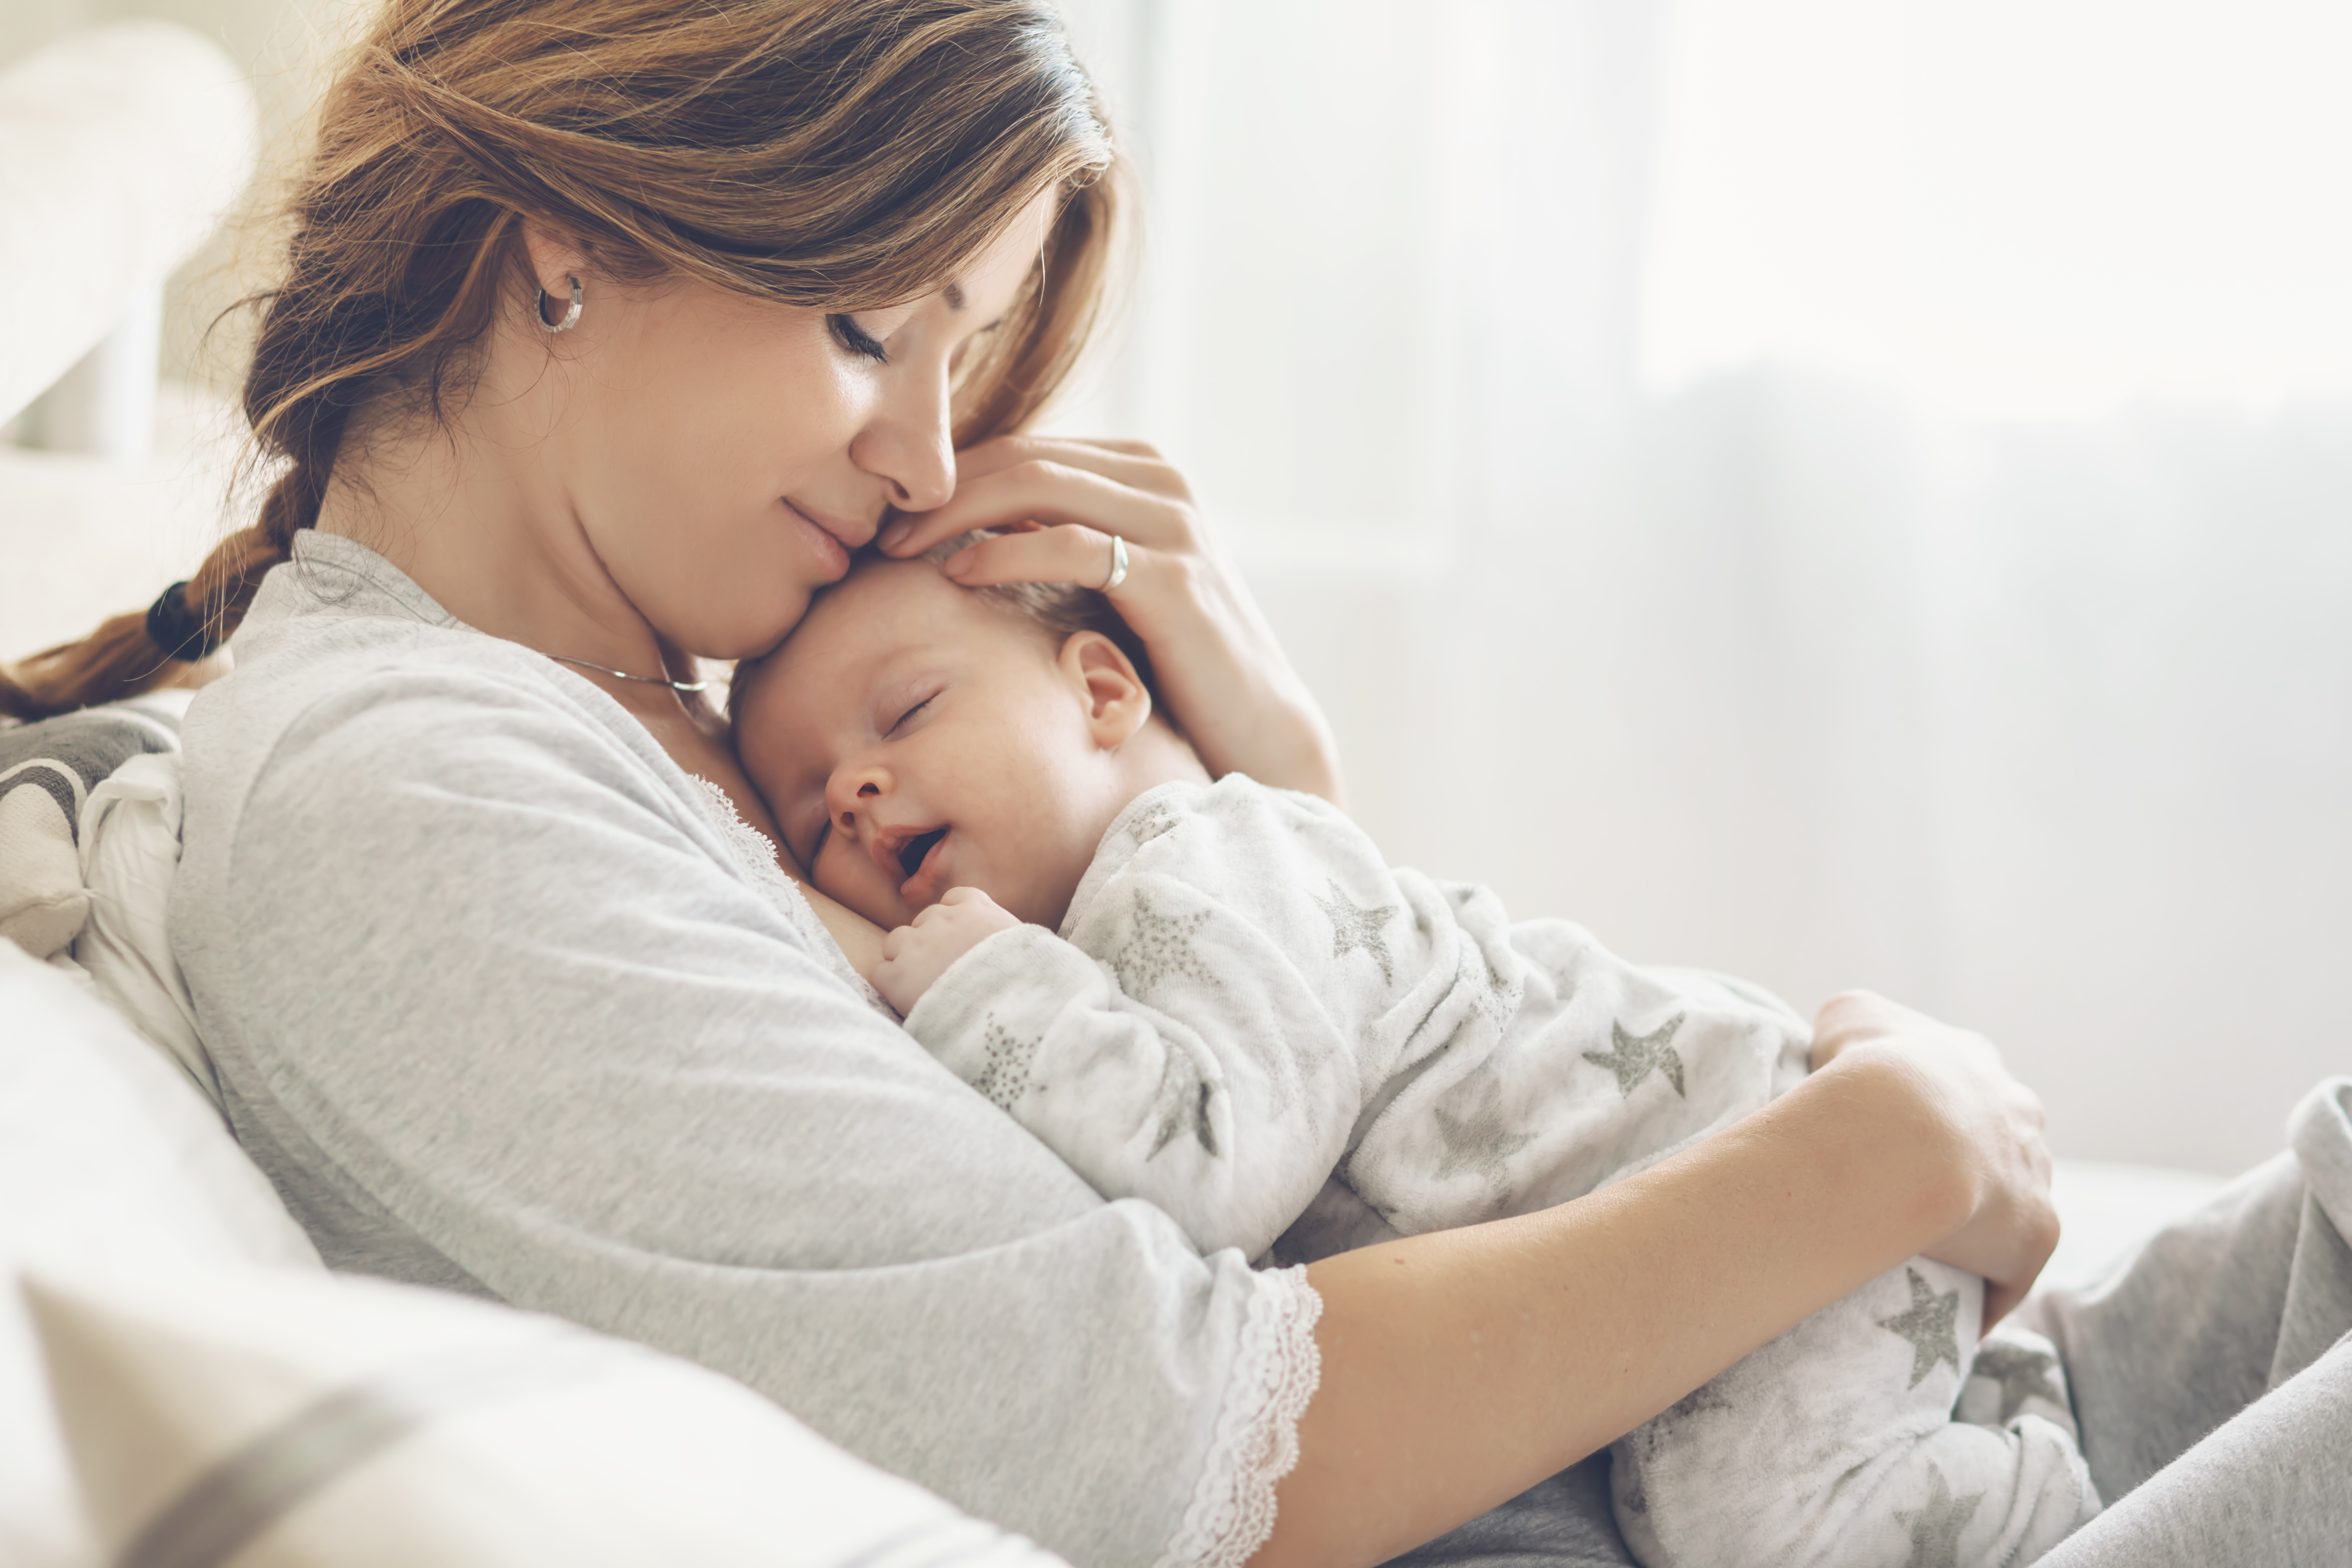 Une femme prend dans ses bras un nouveau-né | Source : Shutterstock